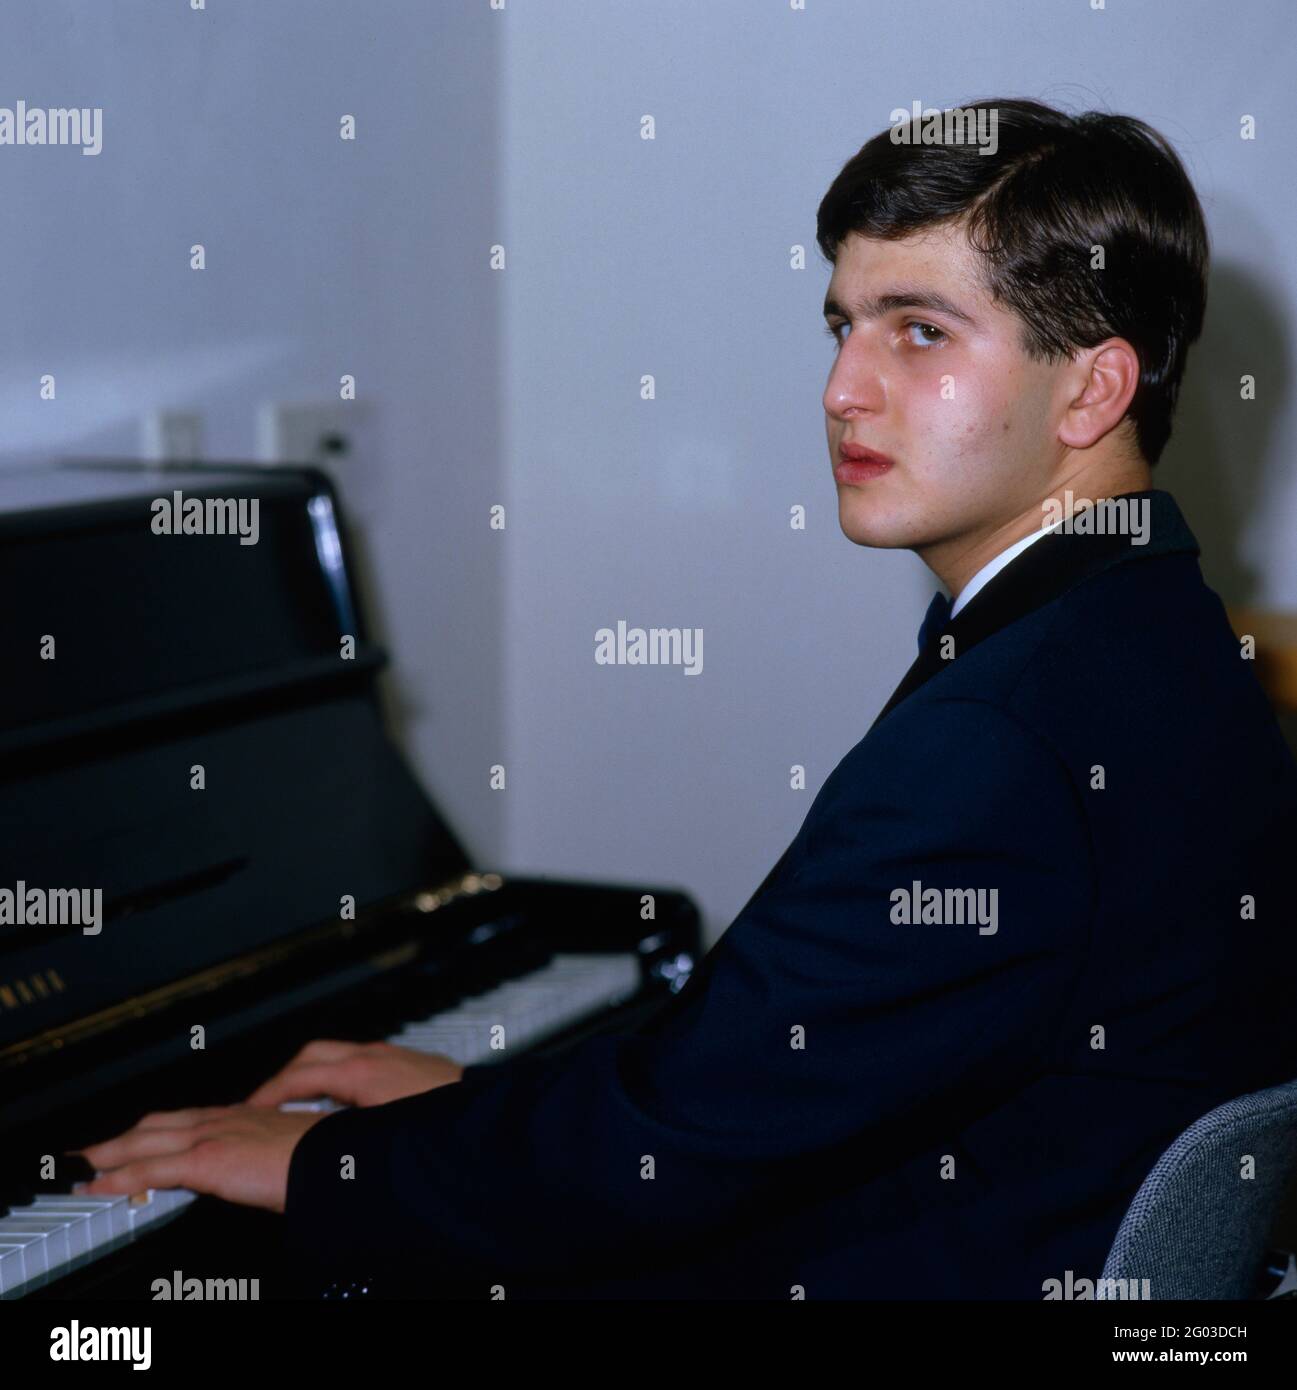 Dimitris Sgouros, griechischer Pianist, am Klavier, 1986. Dimitris Sgouros,  Greek pianist, on the piano, 1986 Stock Photo - Alamy